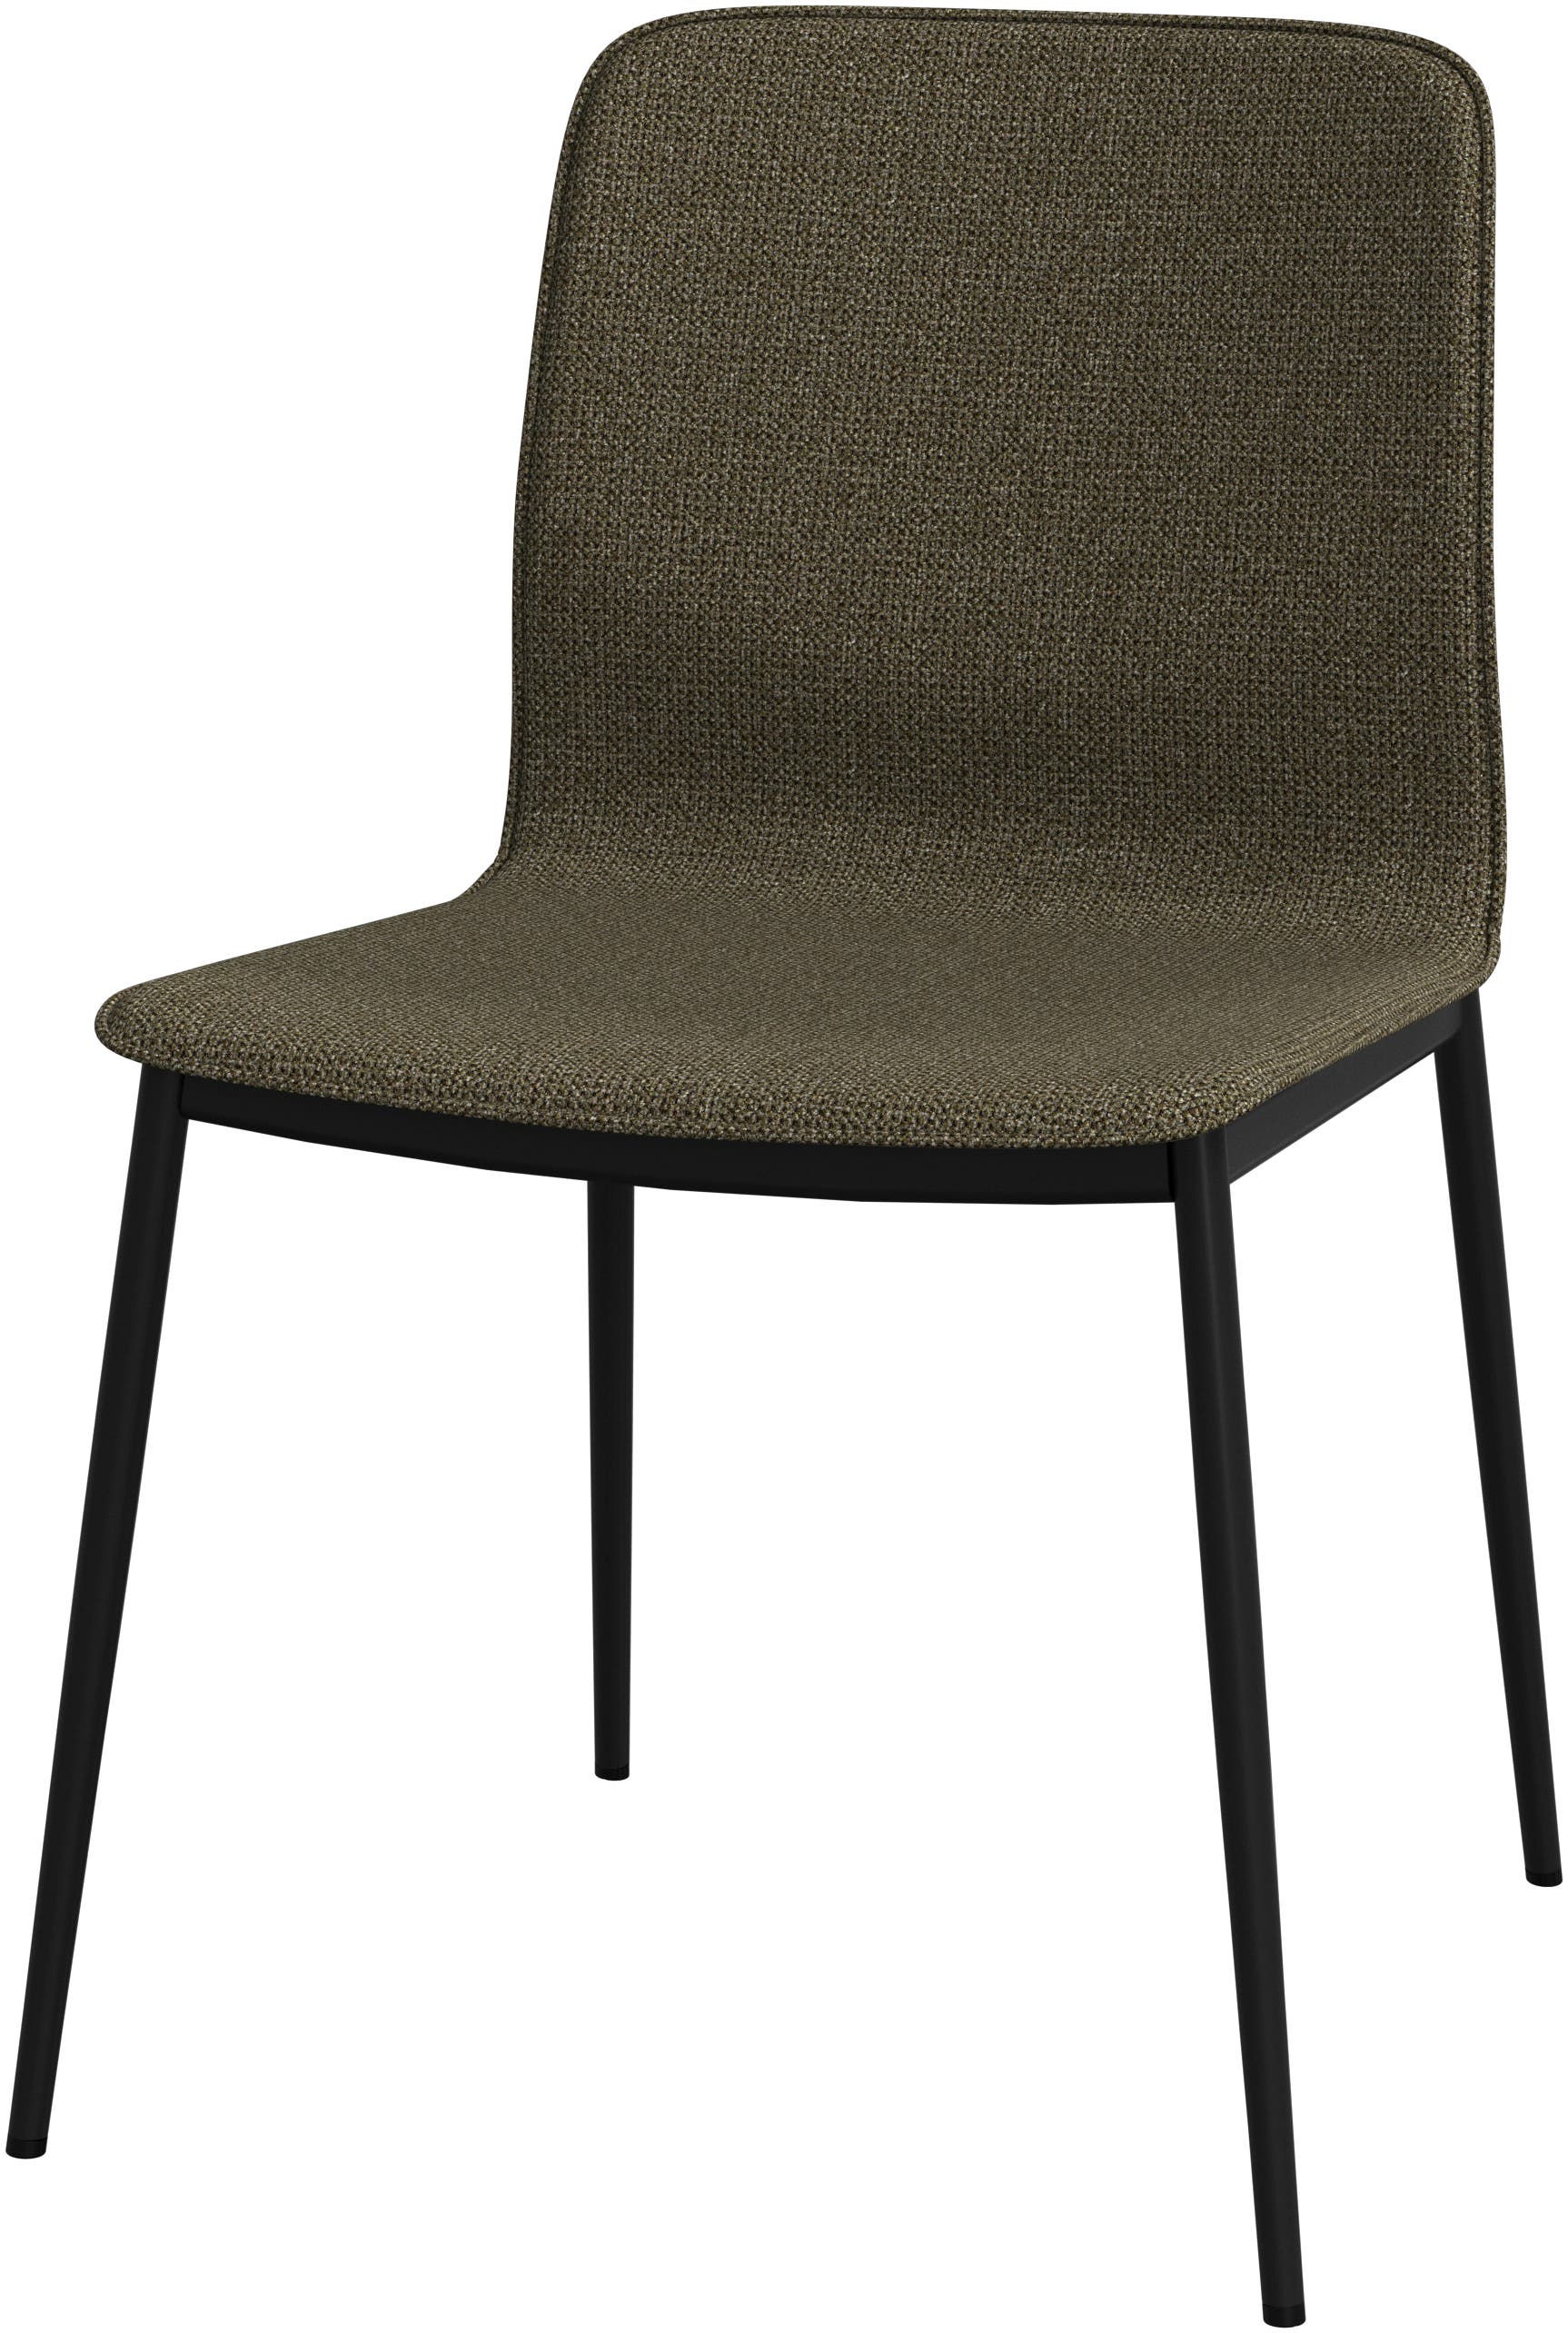 Newport chair